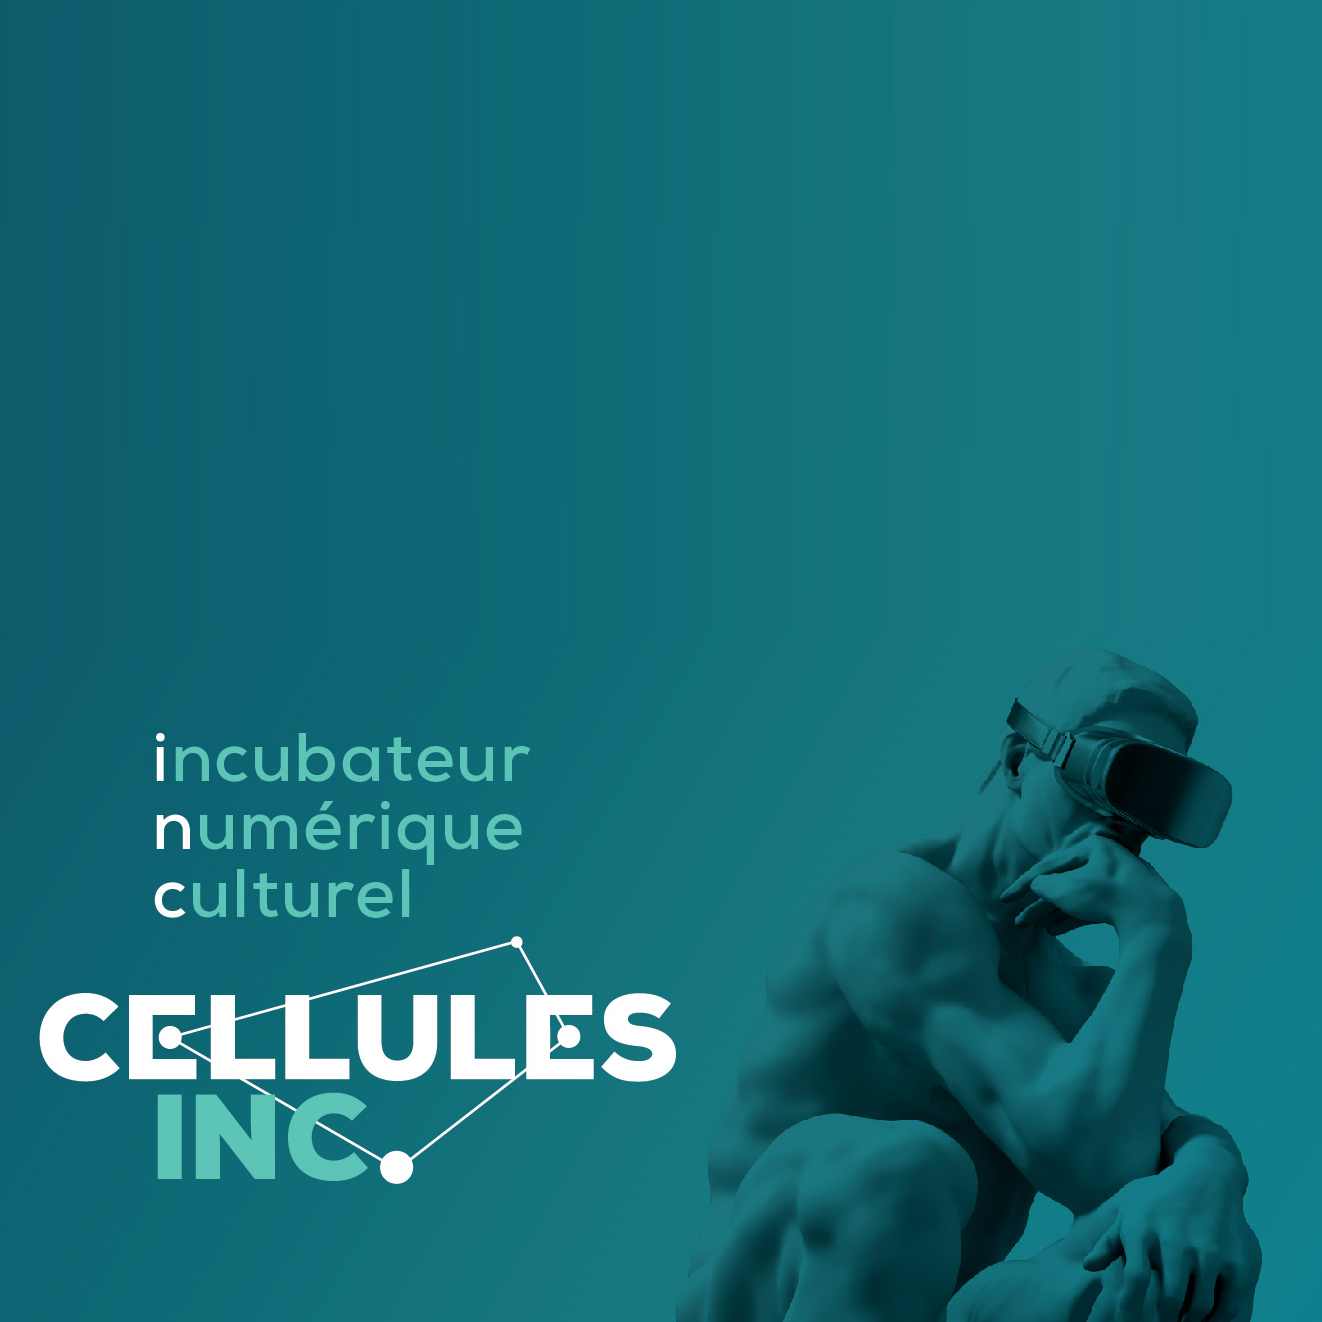 Cellules INC. Incubateur numérique culturel